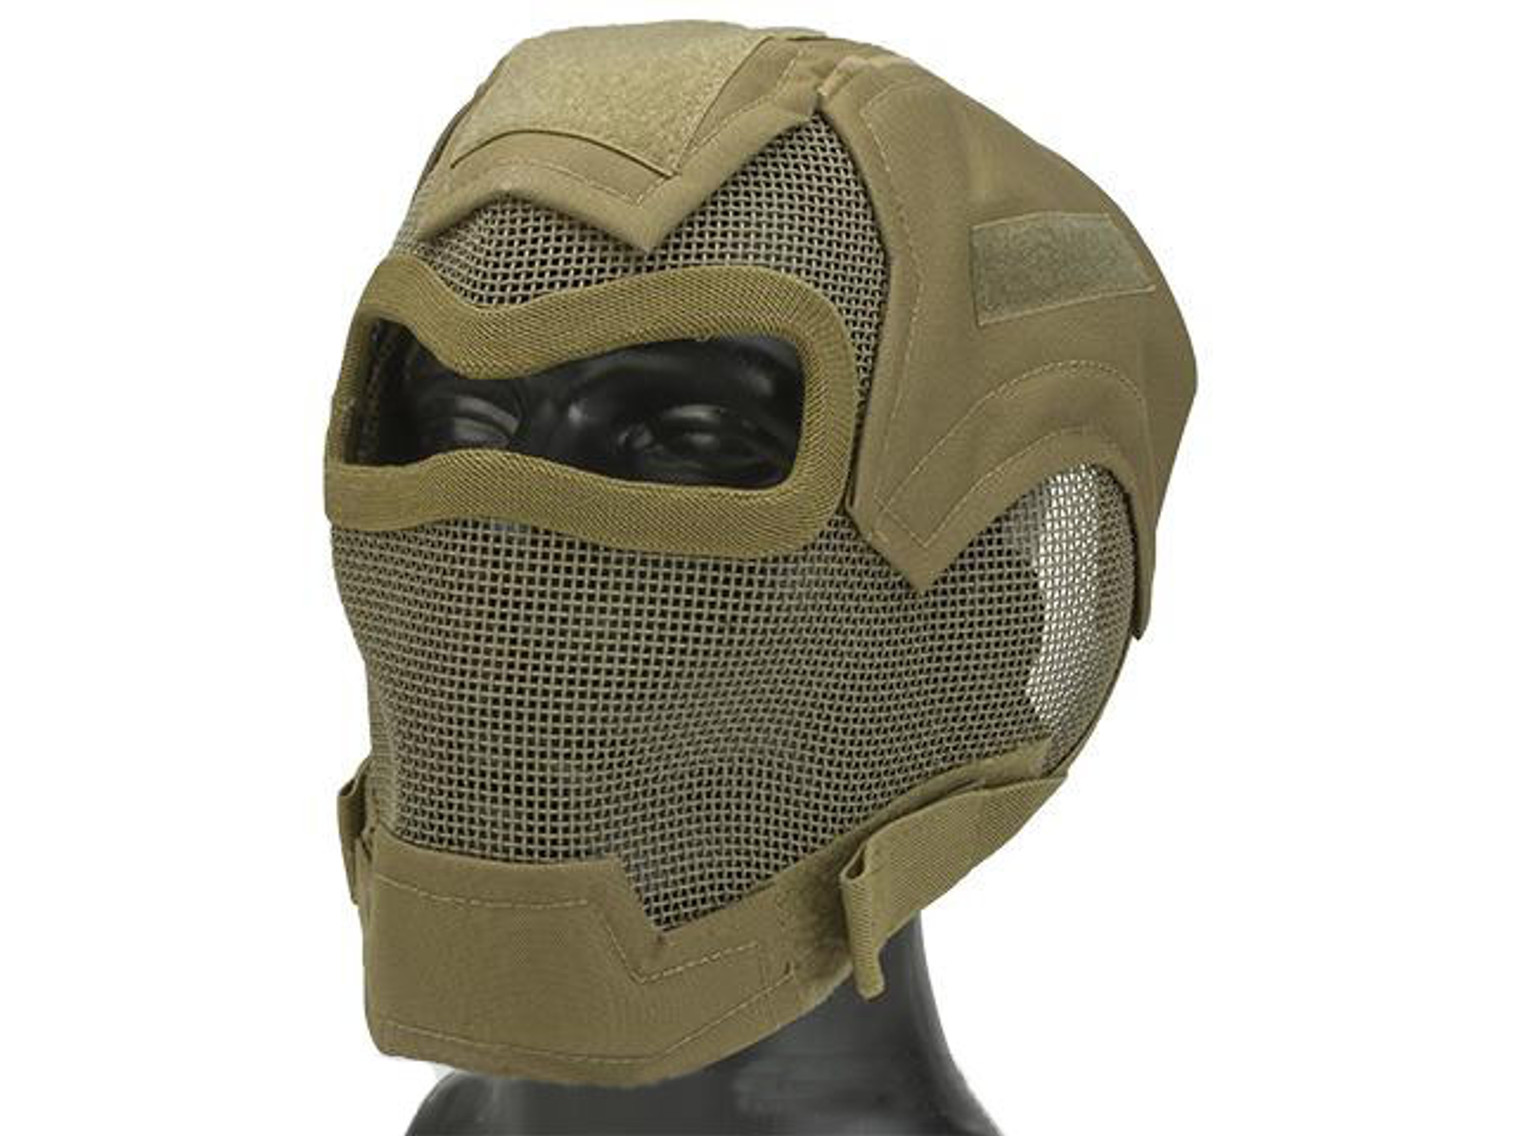 Matrix Iron Face Carbon Steel "Watcher" Gen7 Full Face Mask - Tan